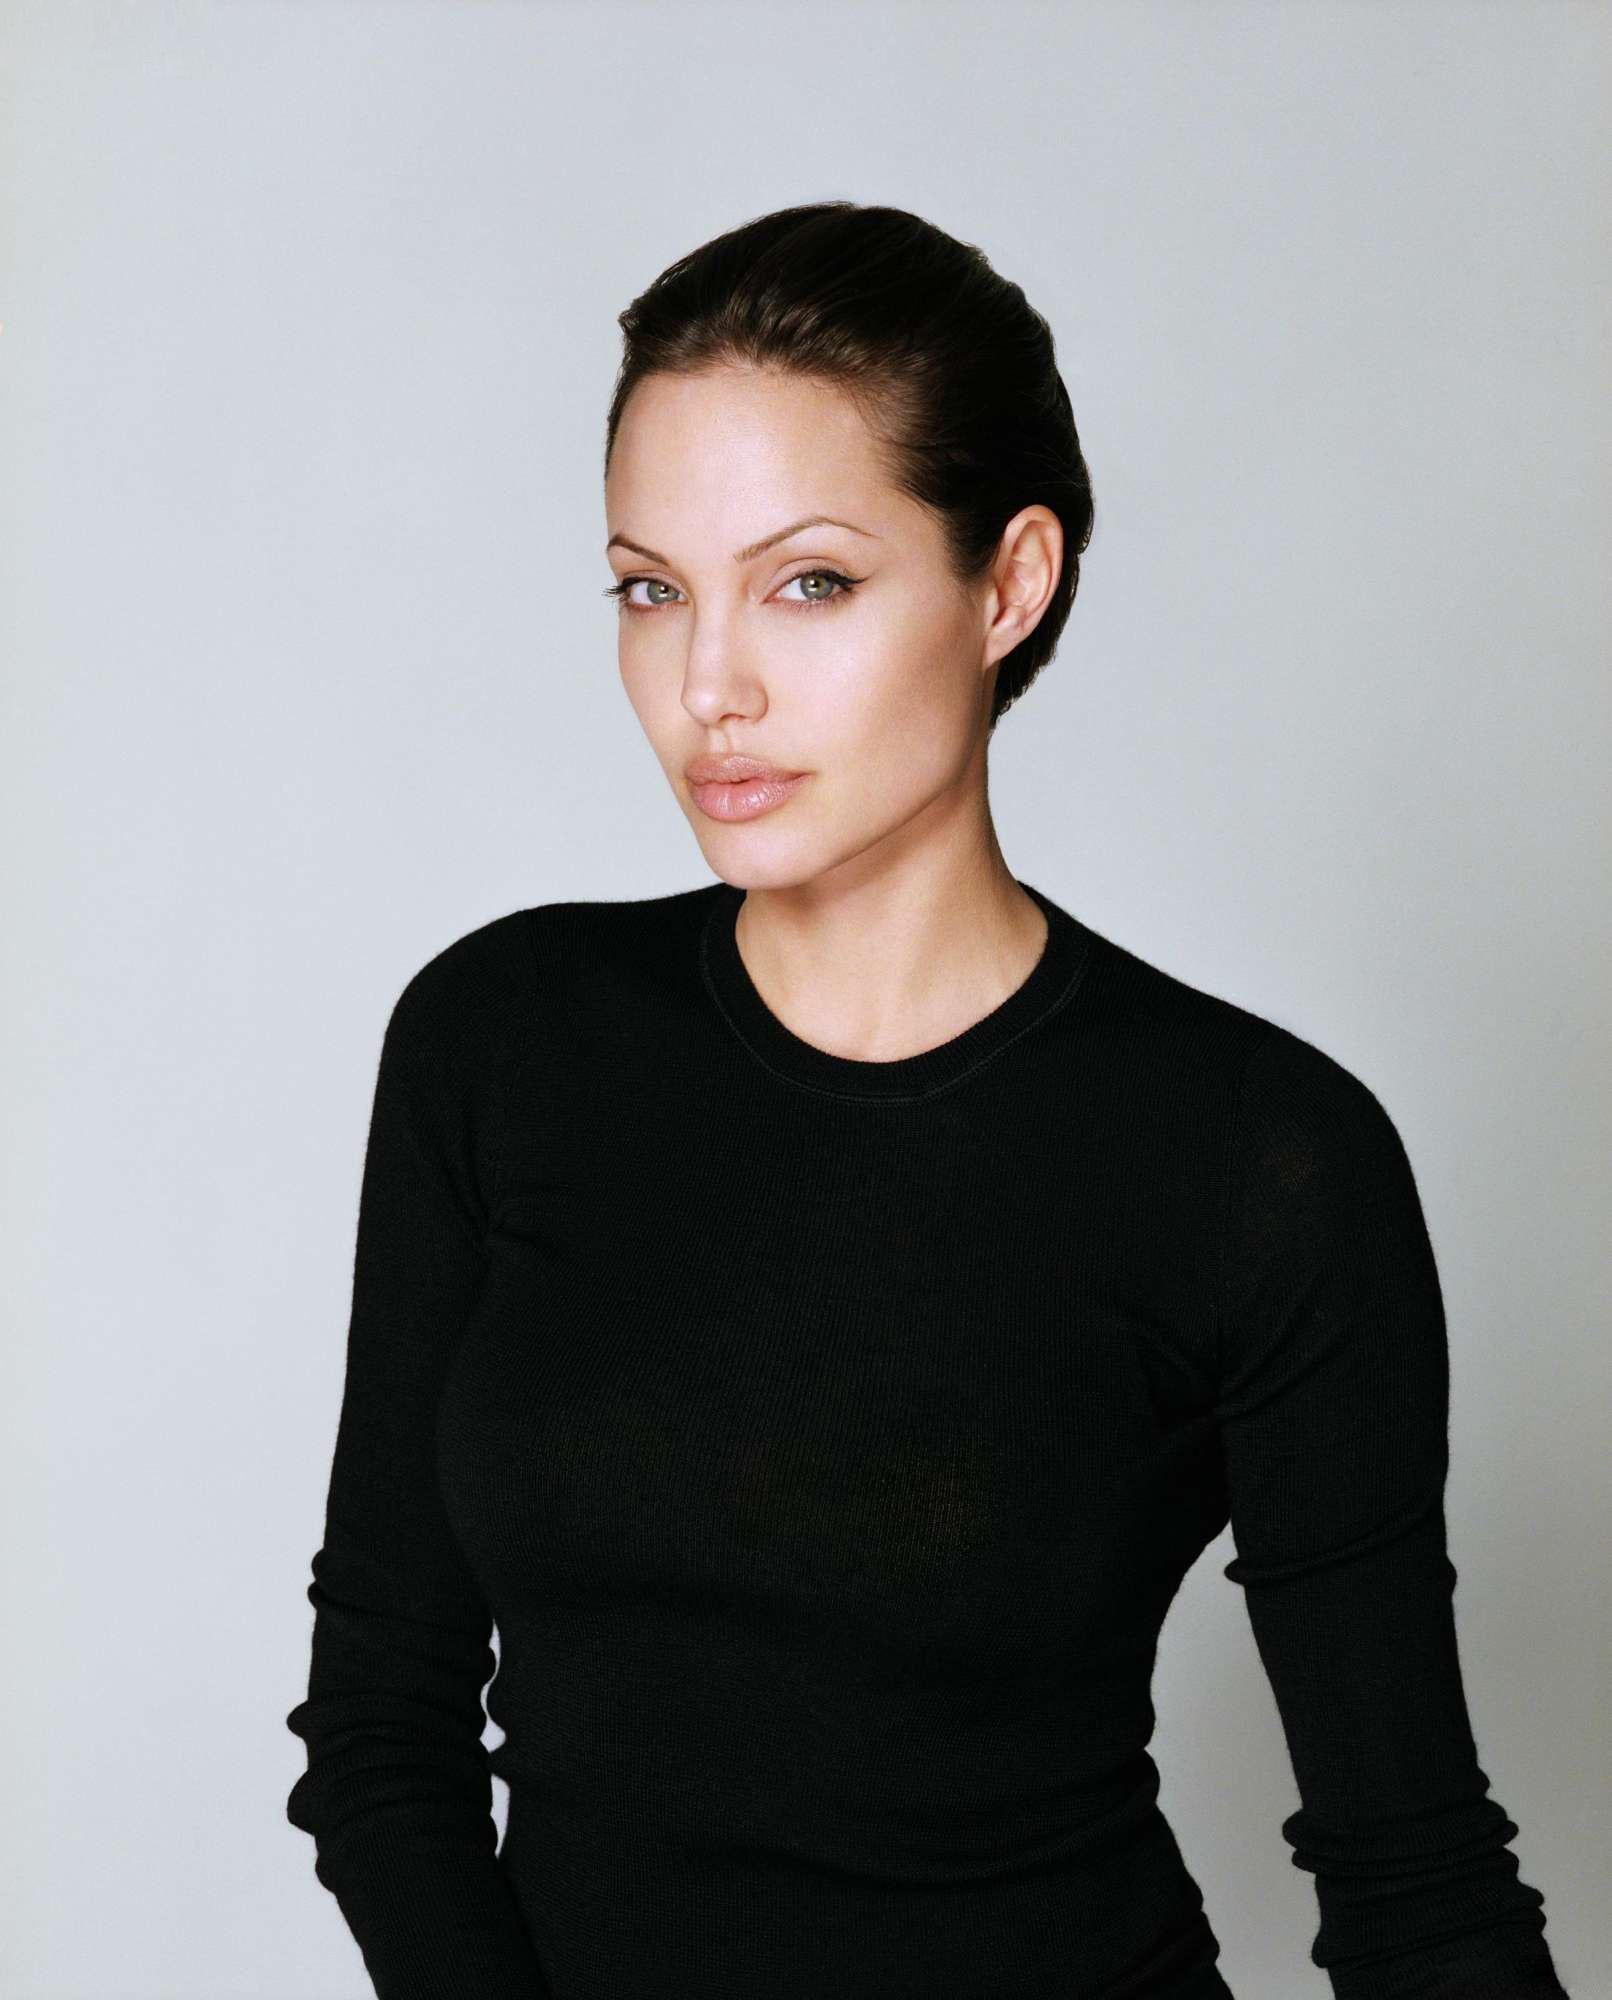 Angelina Jolie wallpaper №7579.